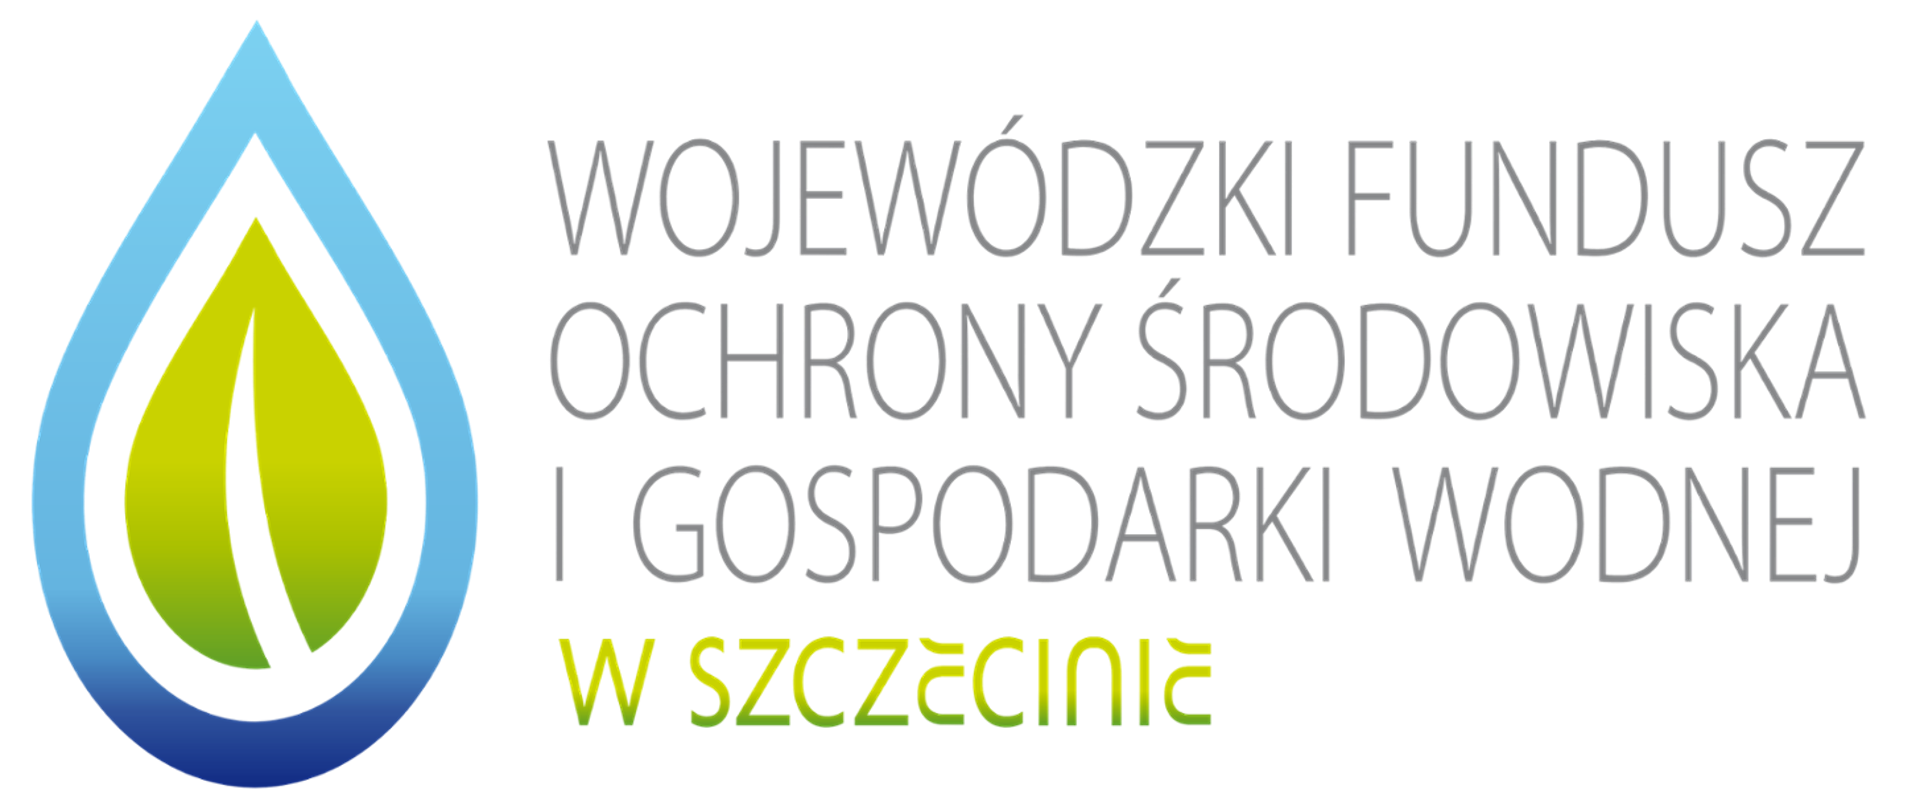 Grafika przedstawia niebiesko-zieloną kropelkę wody po lewej stronie oraz napis "Wojewódzki Fundusz Ochrony Środowiska i Gospodarki Wodnej w Szczecinie". Tło grafiki niebieskie. 